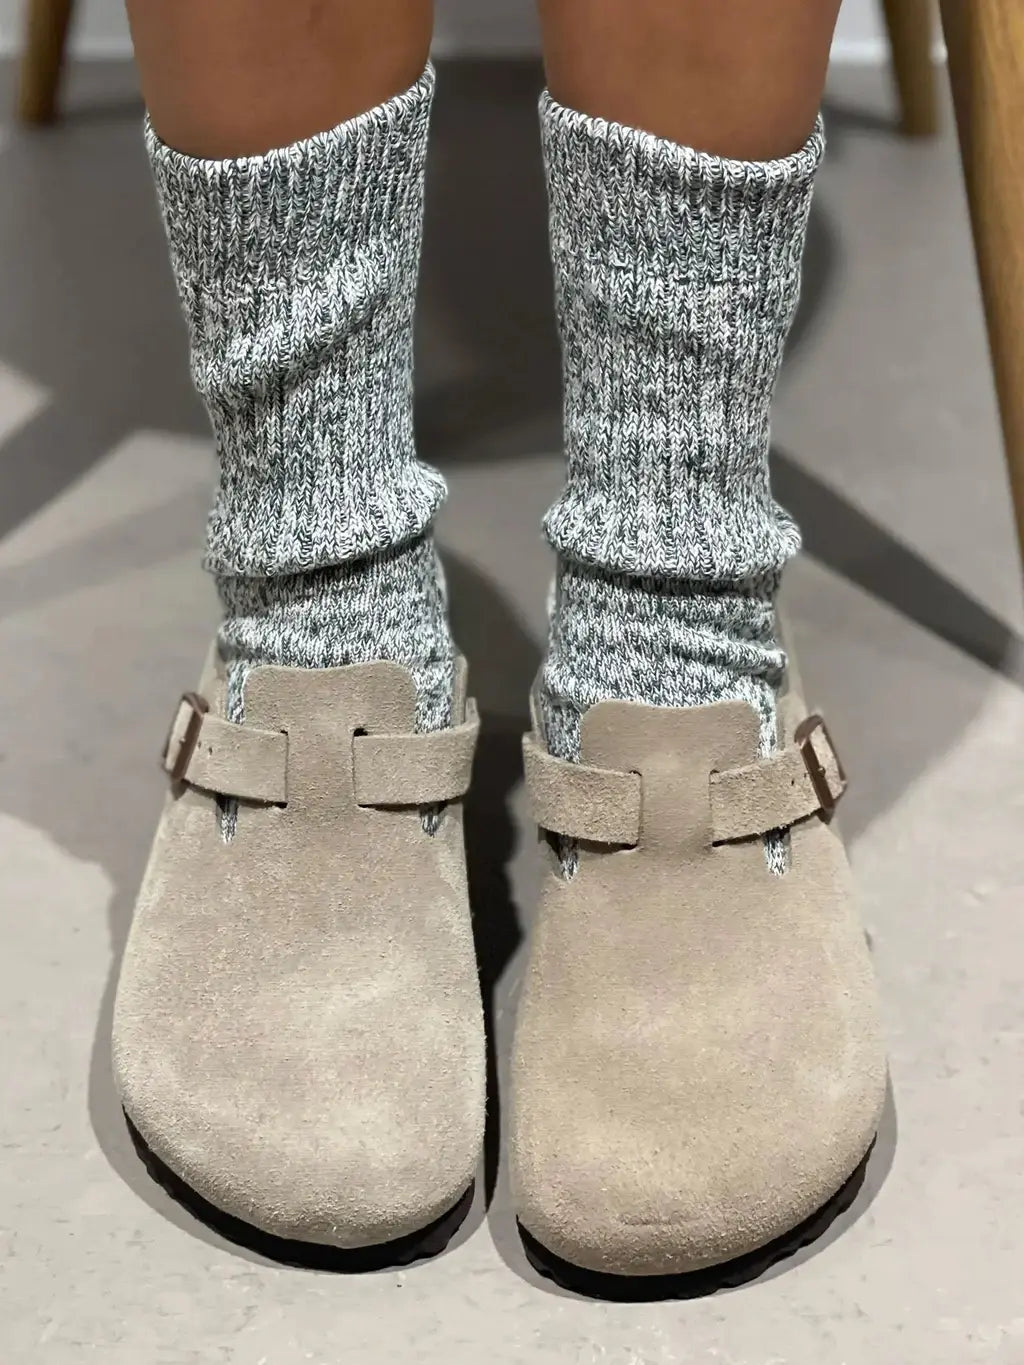 The Tideline | Women's Quarter Length Socks by Ivy Ellis Socks 